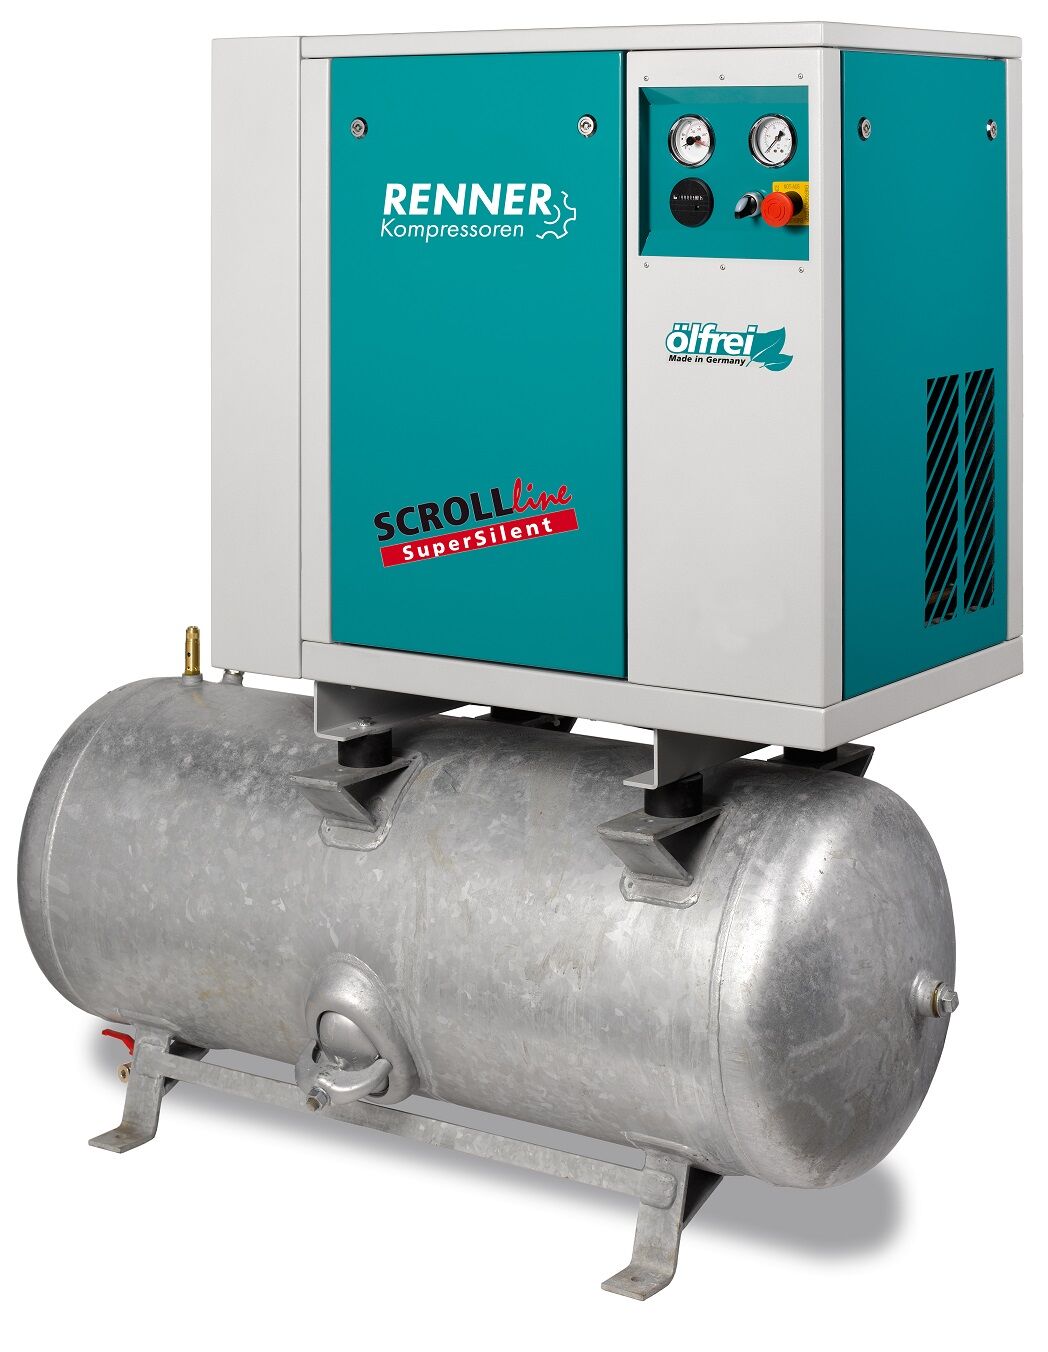 RENNER-Kompressor SLD-S 1,5 auf 90 Liter Druckbehälter - SuperSilent ölfreier Scrollkompressor